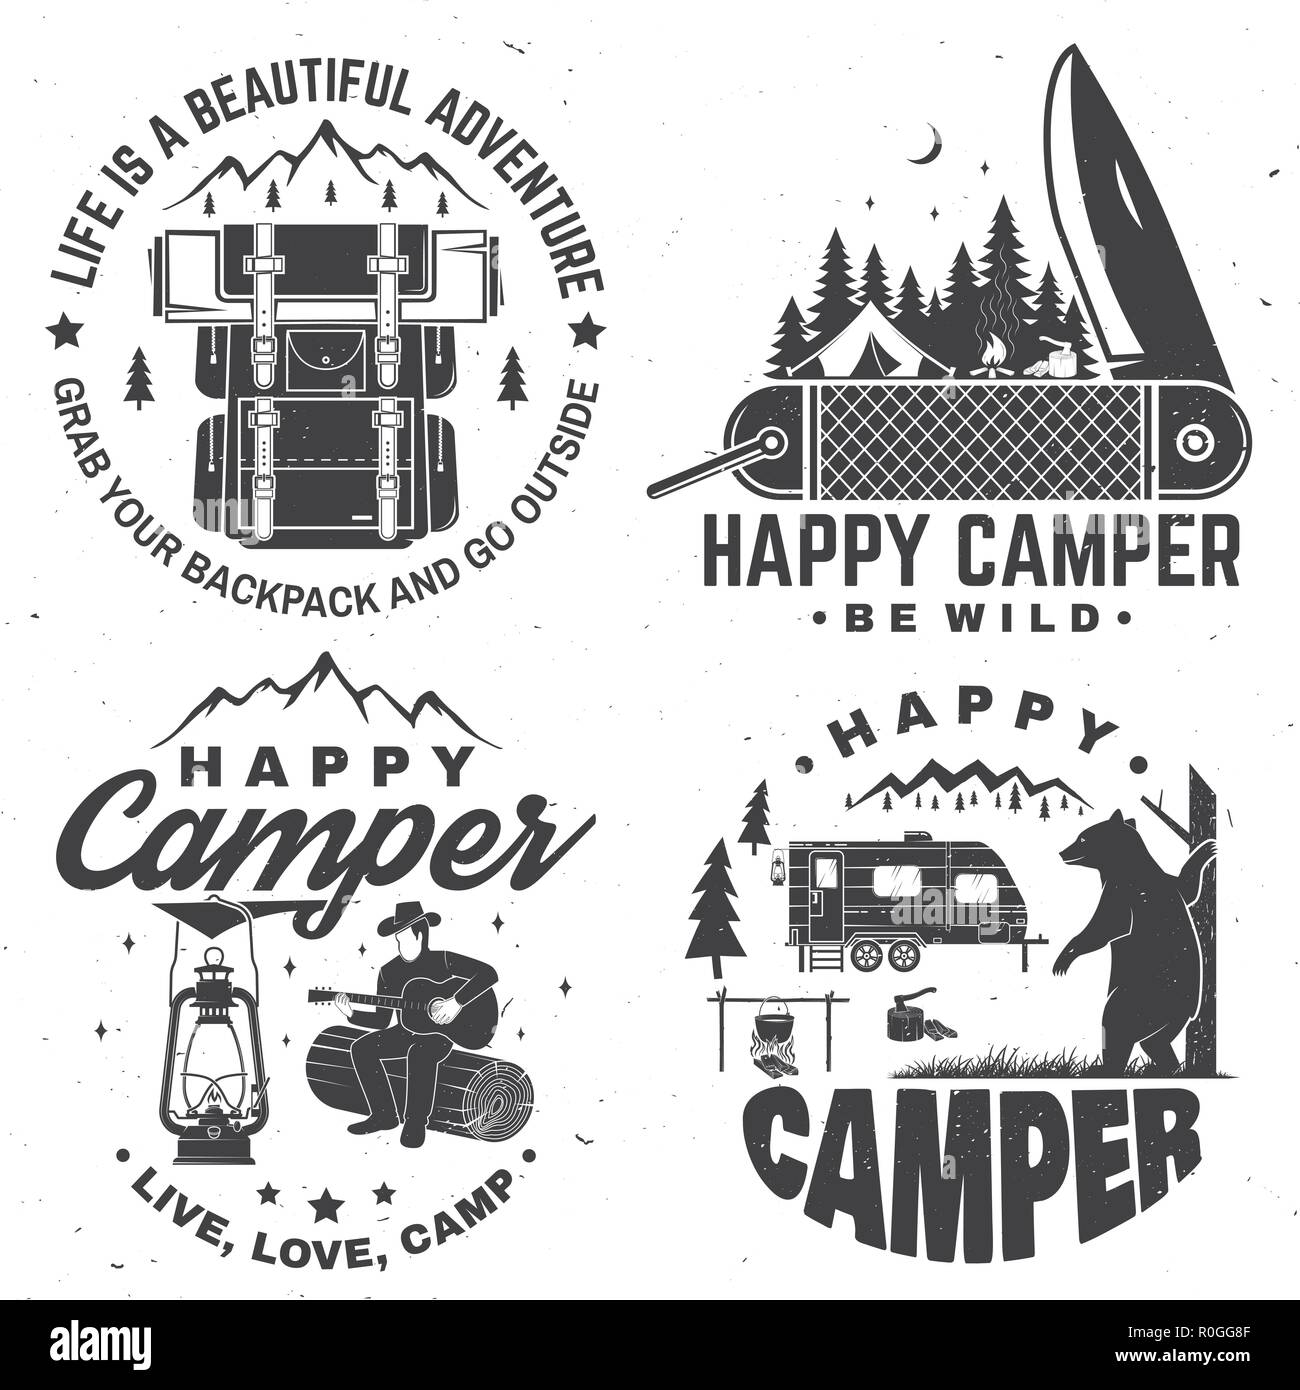 Happy camper. Vector illustration. Concept for shirt or logo, print ...